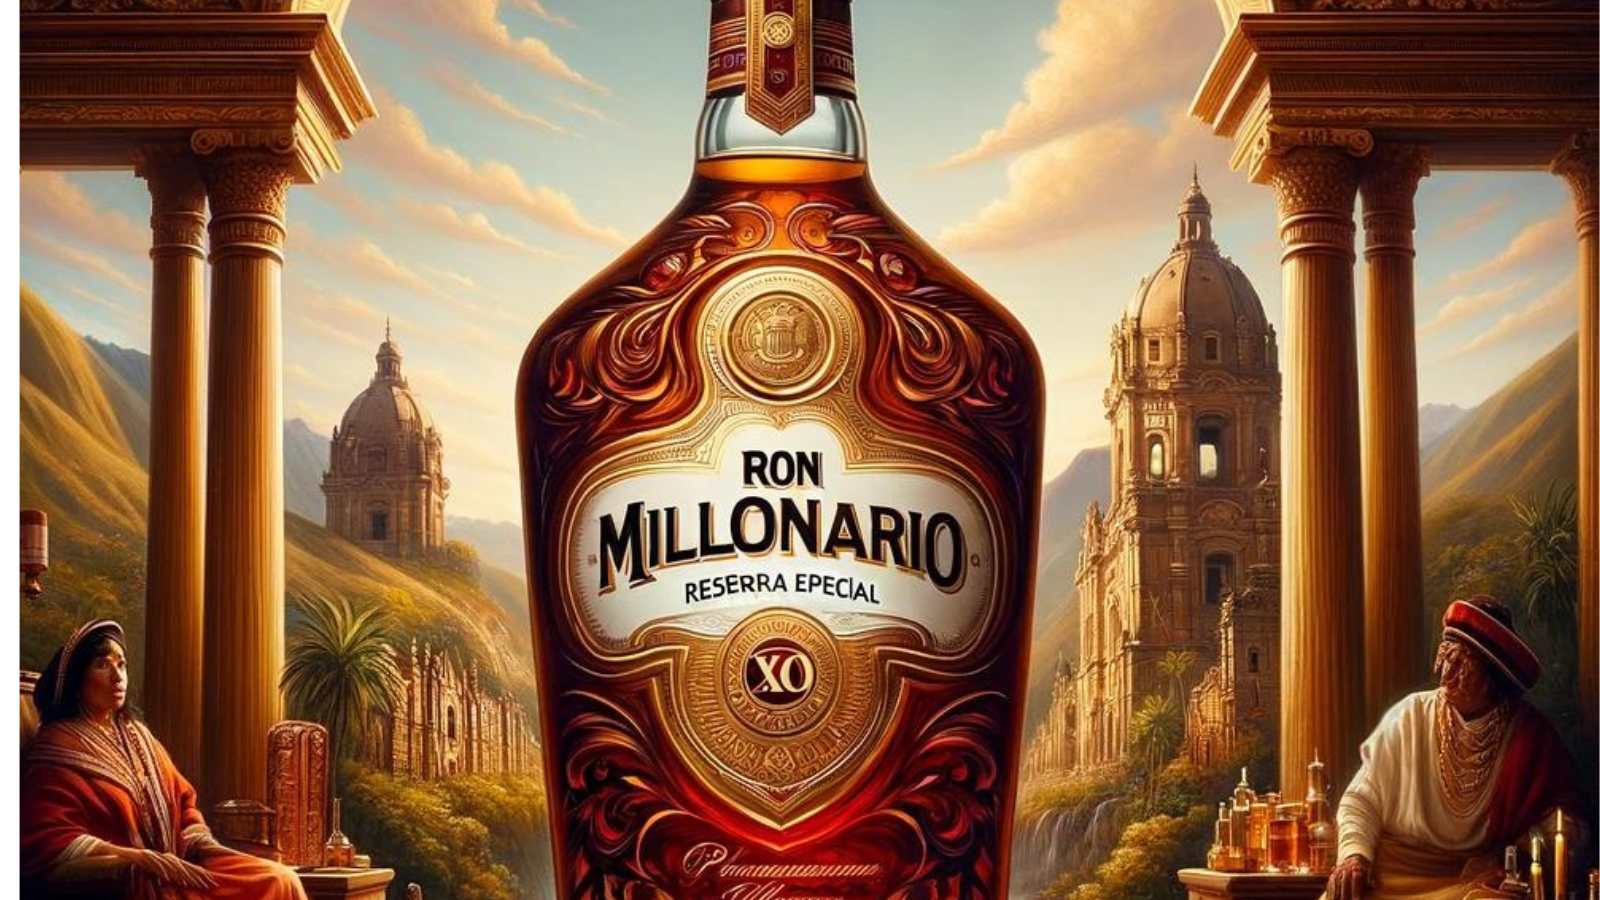 Cata y reviews del Ron Millonario XO